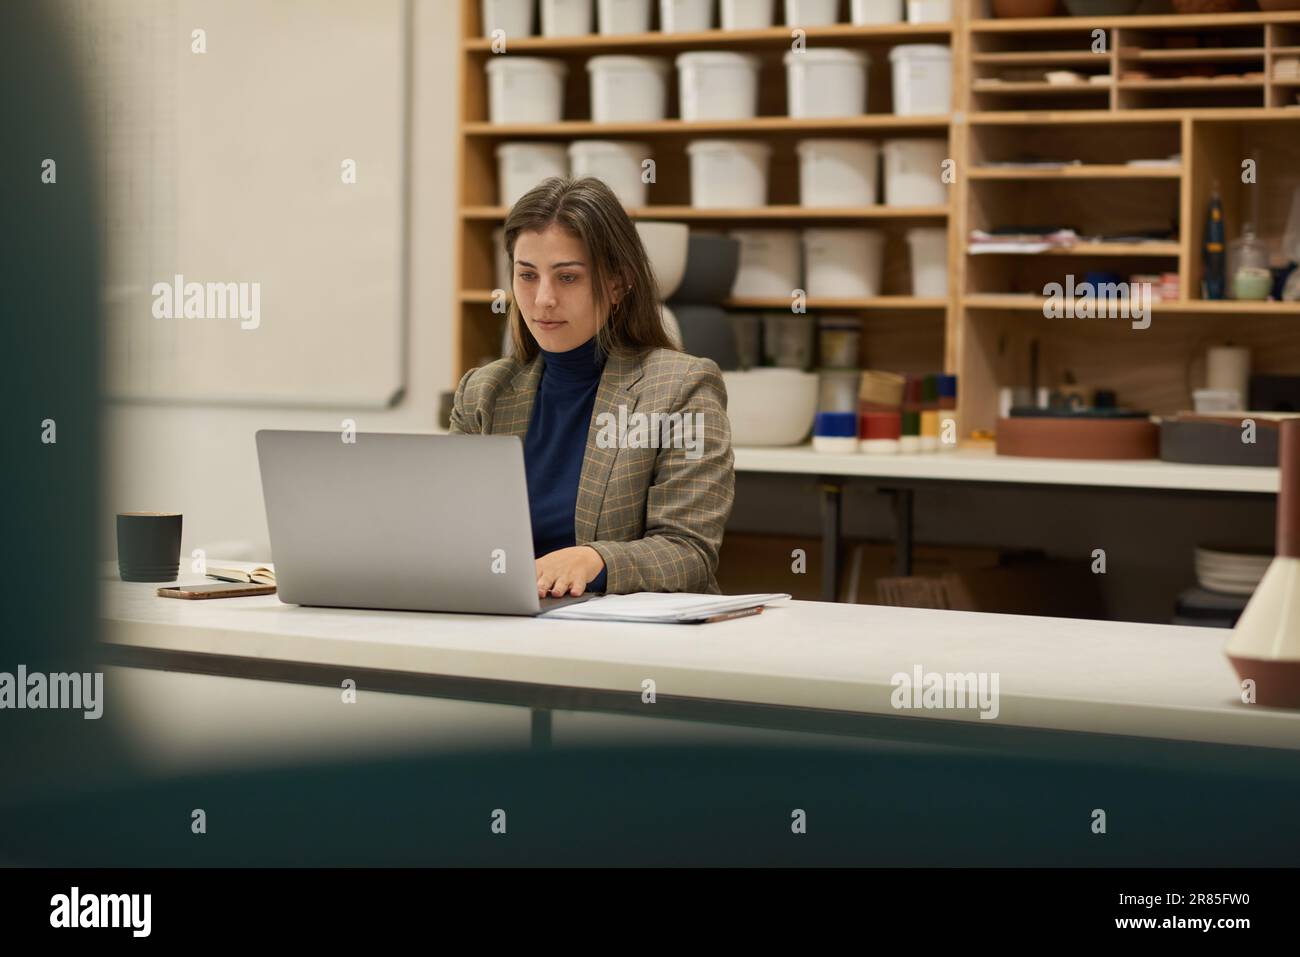 Chef d'atelier céramique travaillant sur un ordinateur portable à une table Banque D'Images